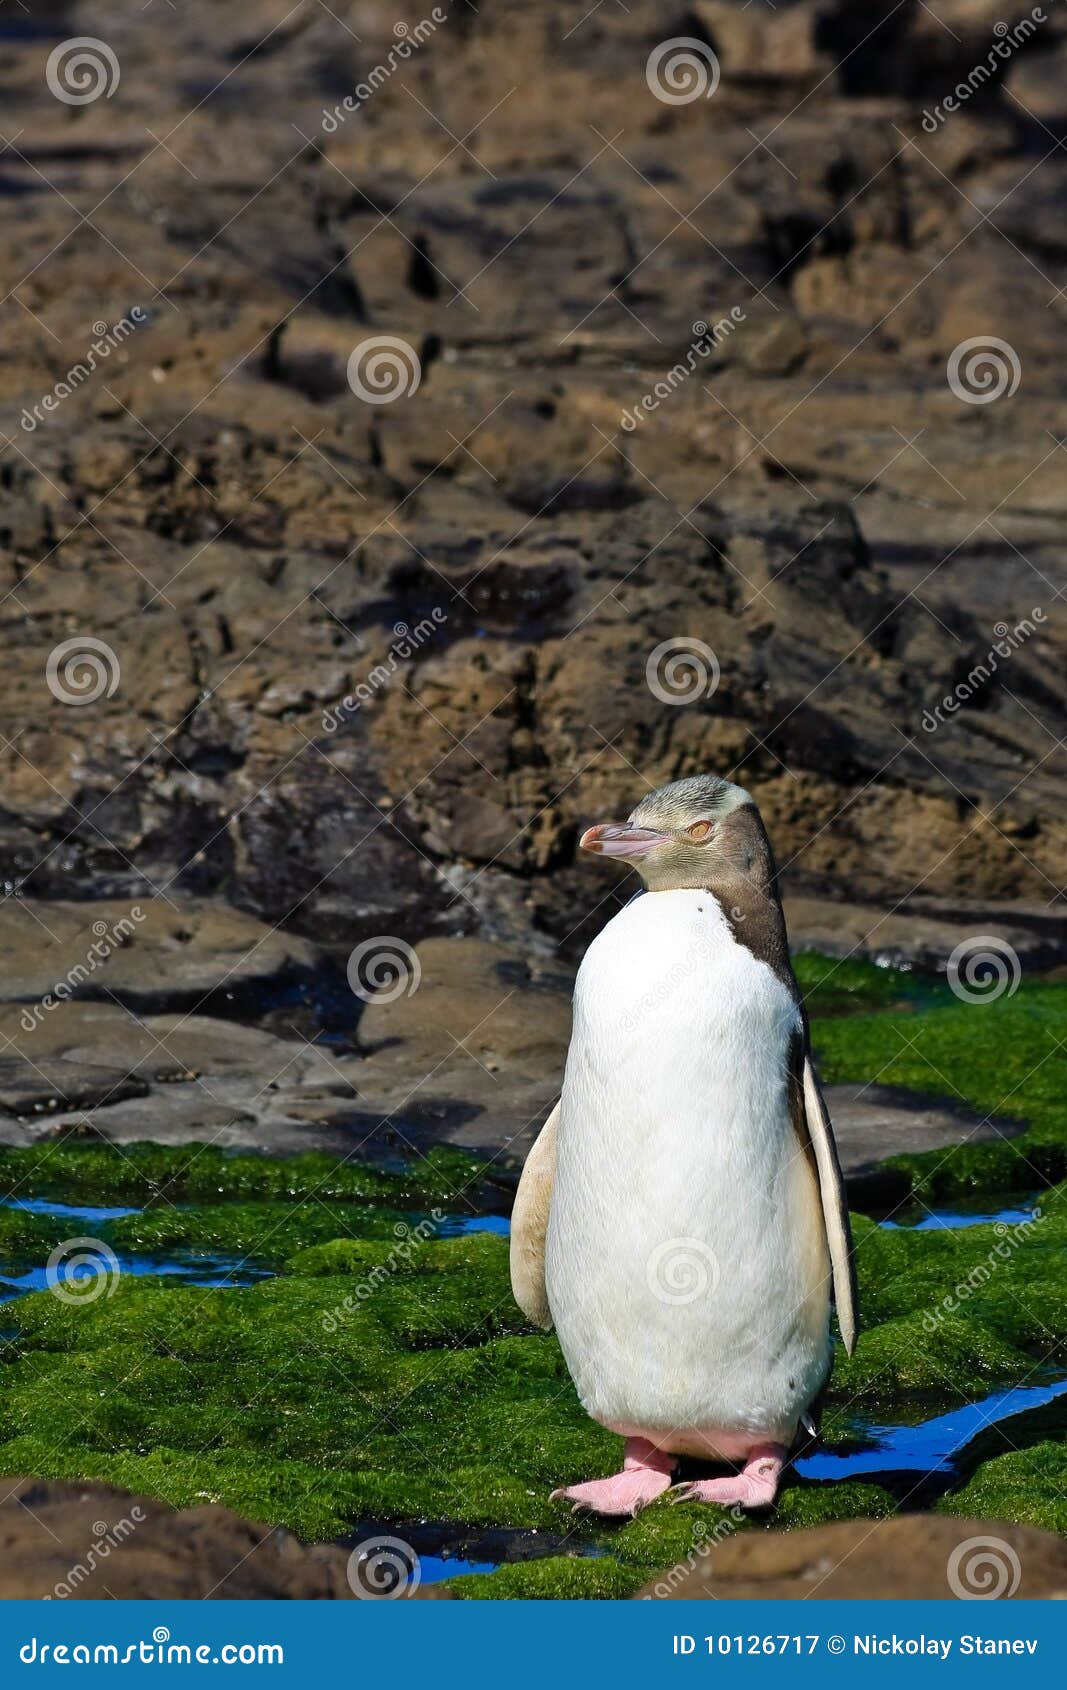 yellow eyed penguin posing